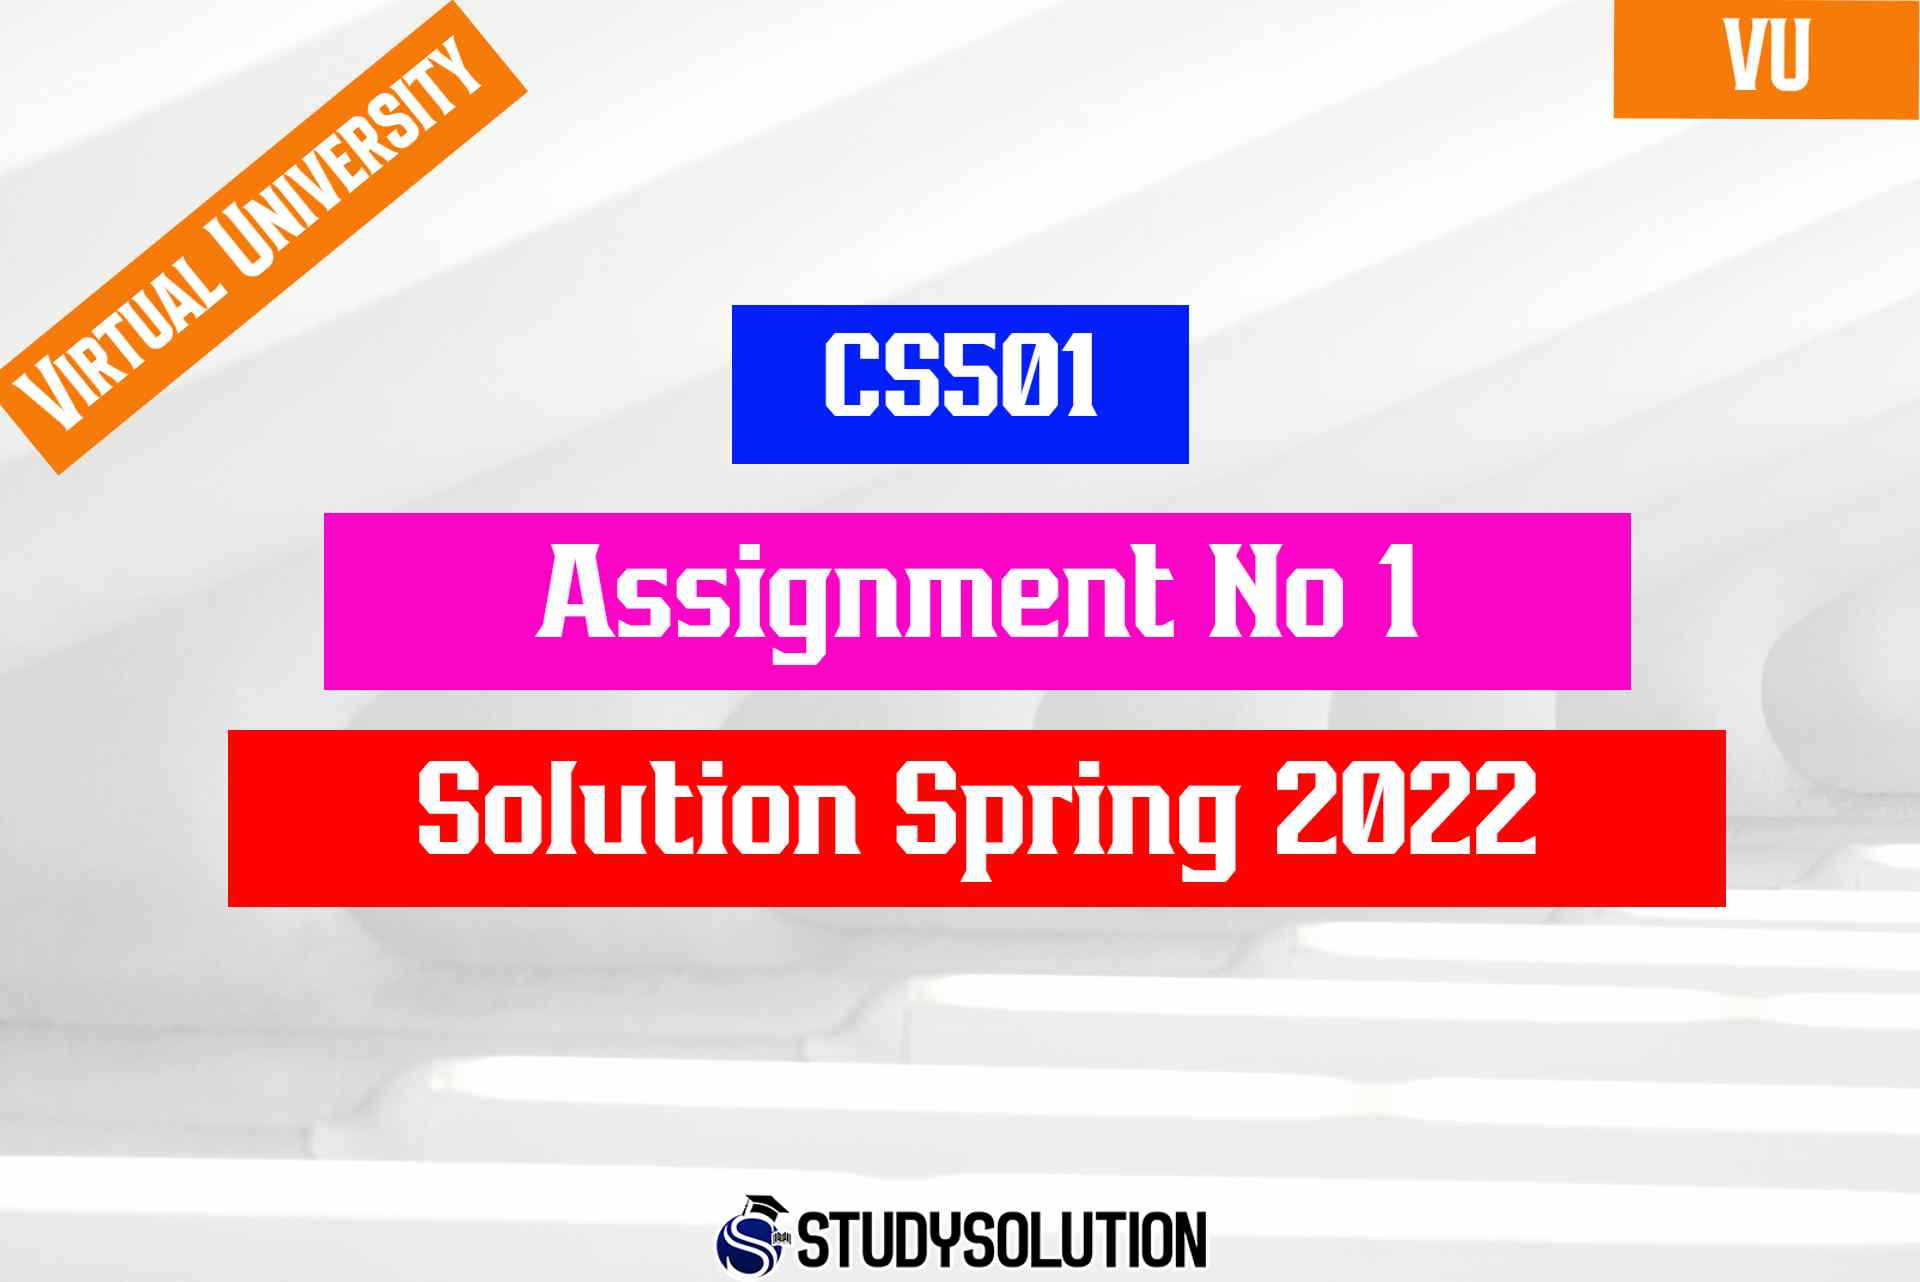 CS501 Assignment No 1 Solution Spring 2022